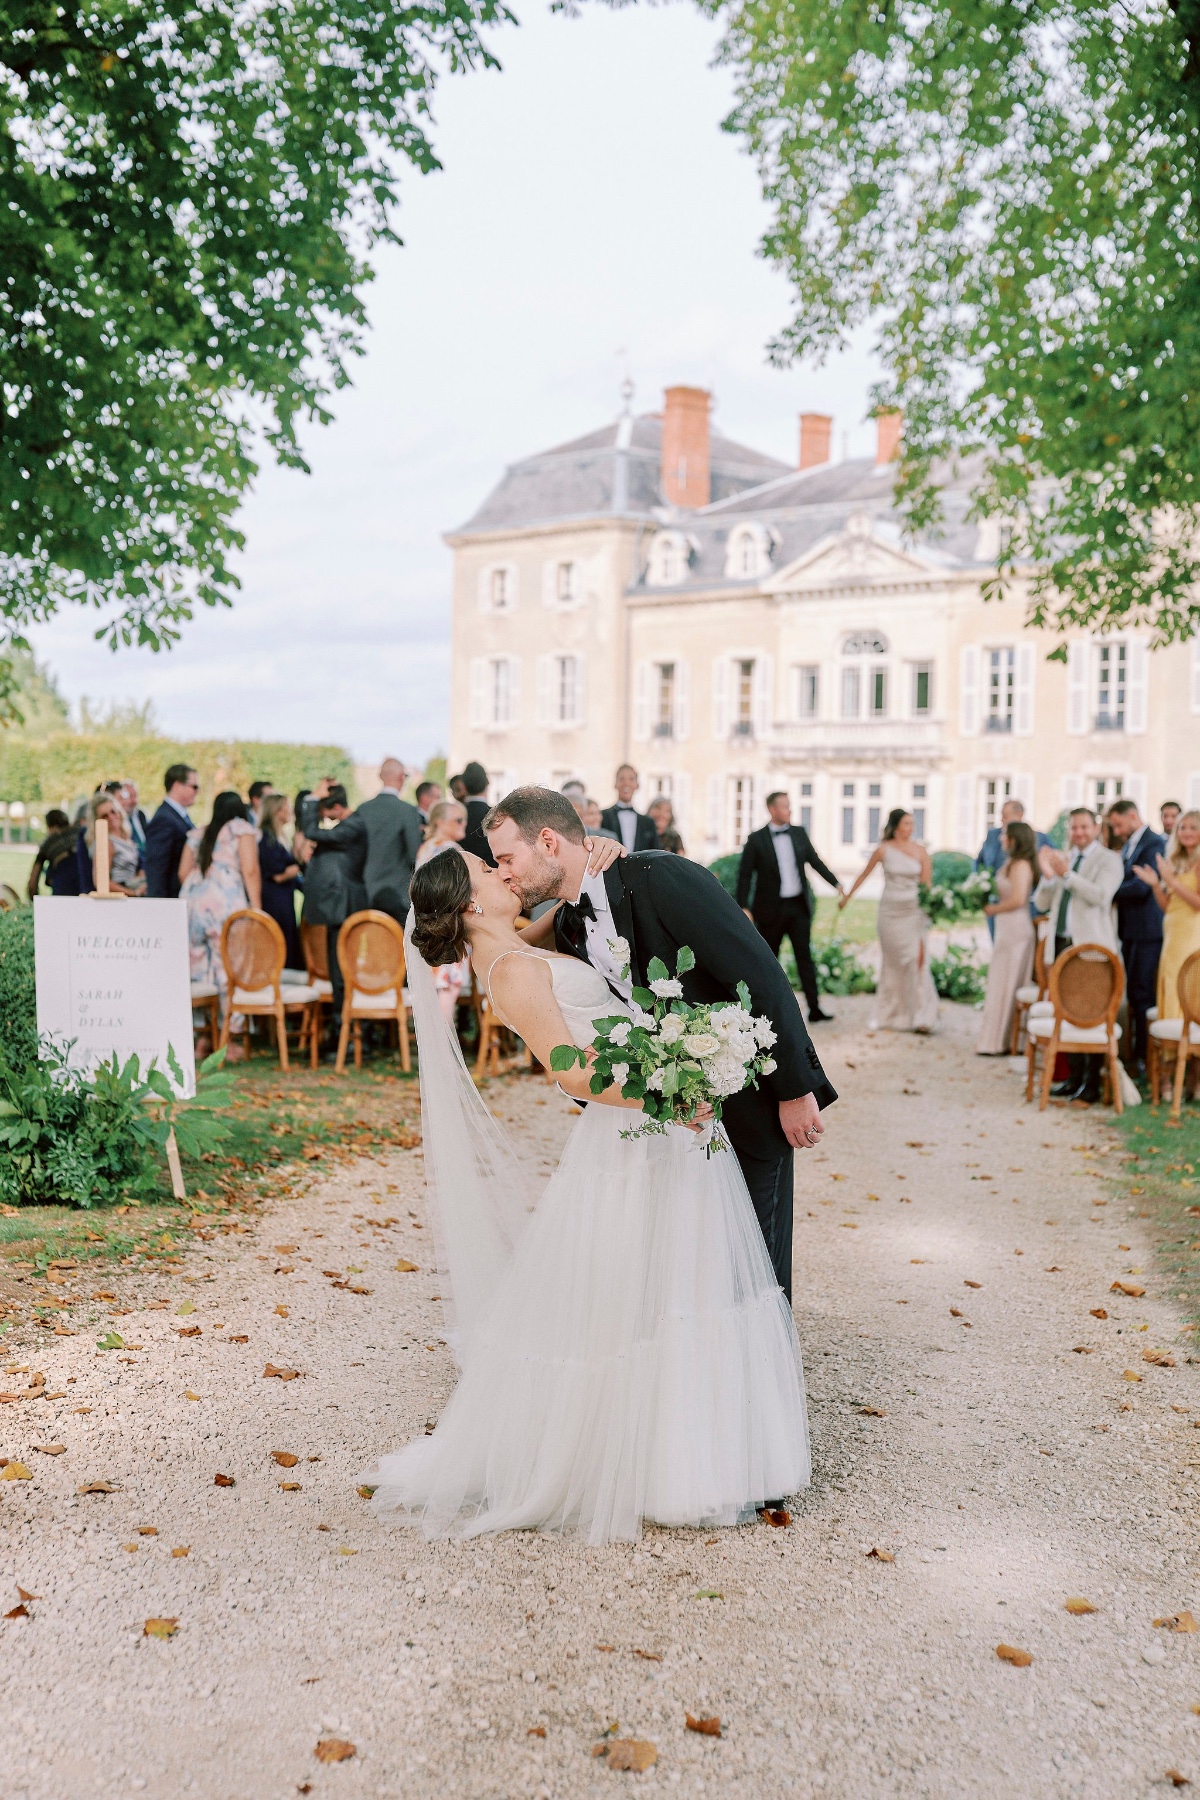 Black and White Destination Wedding at Chateau de Varennes